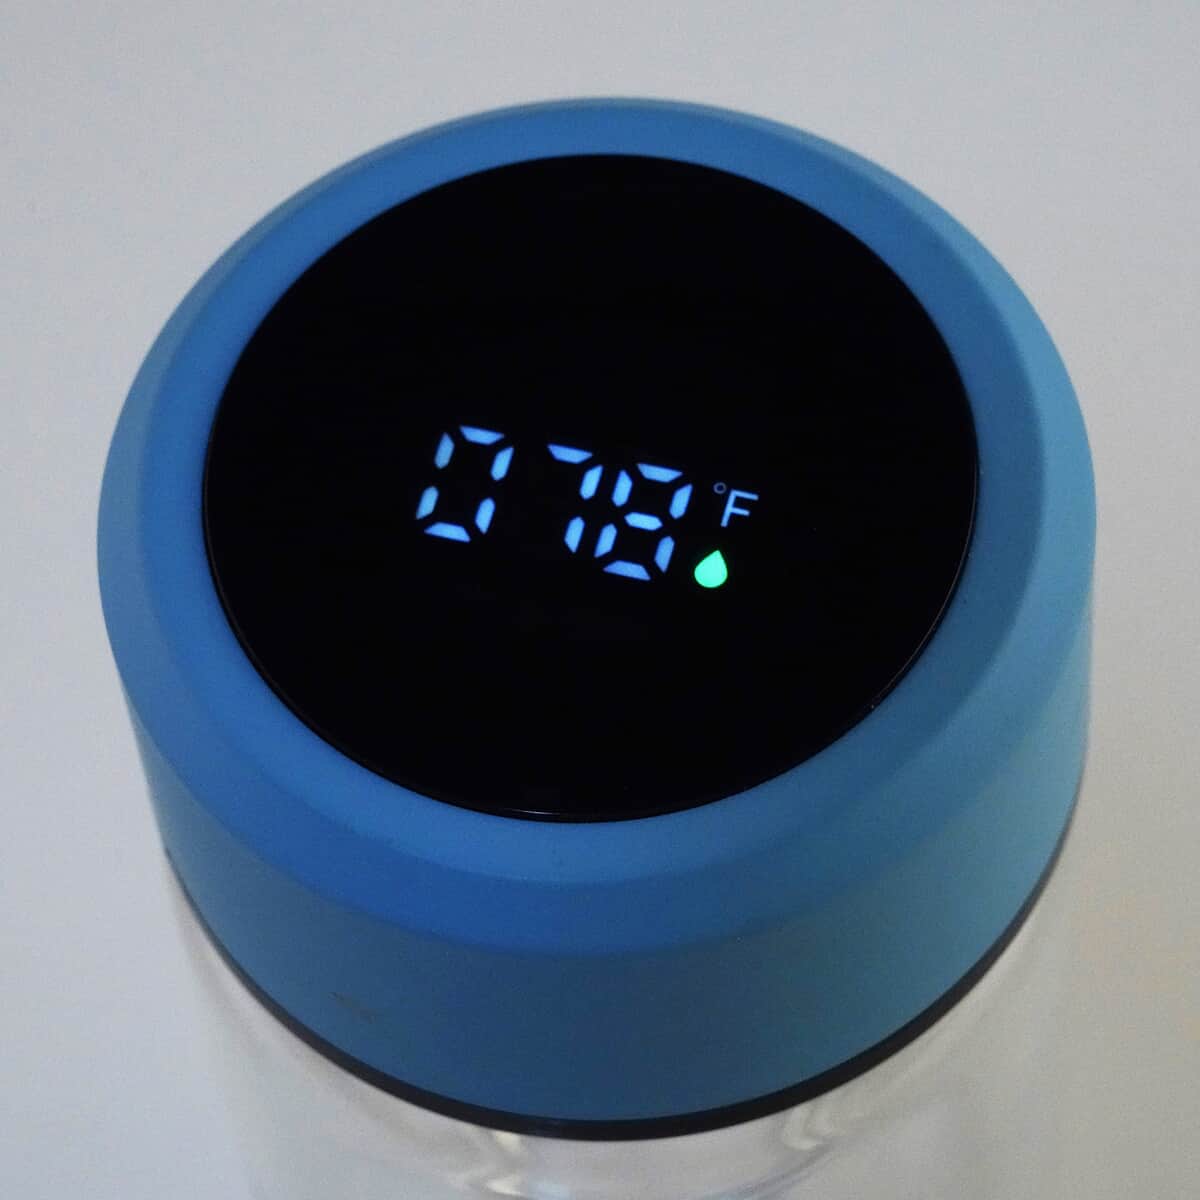 Elite Shungite Filter Infuser and Temperature Sensor Smart Water Bottle (LED Display, Long Filter) - Blue image number 2